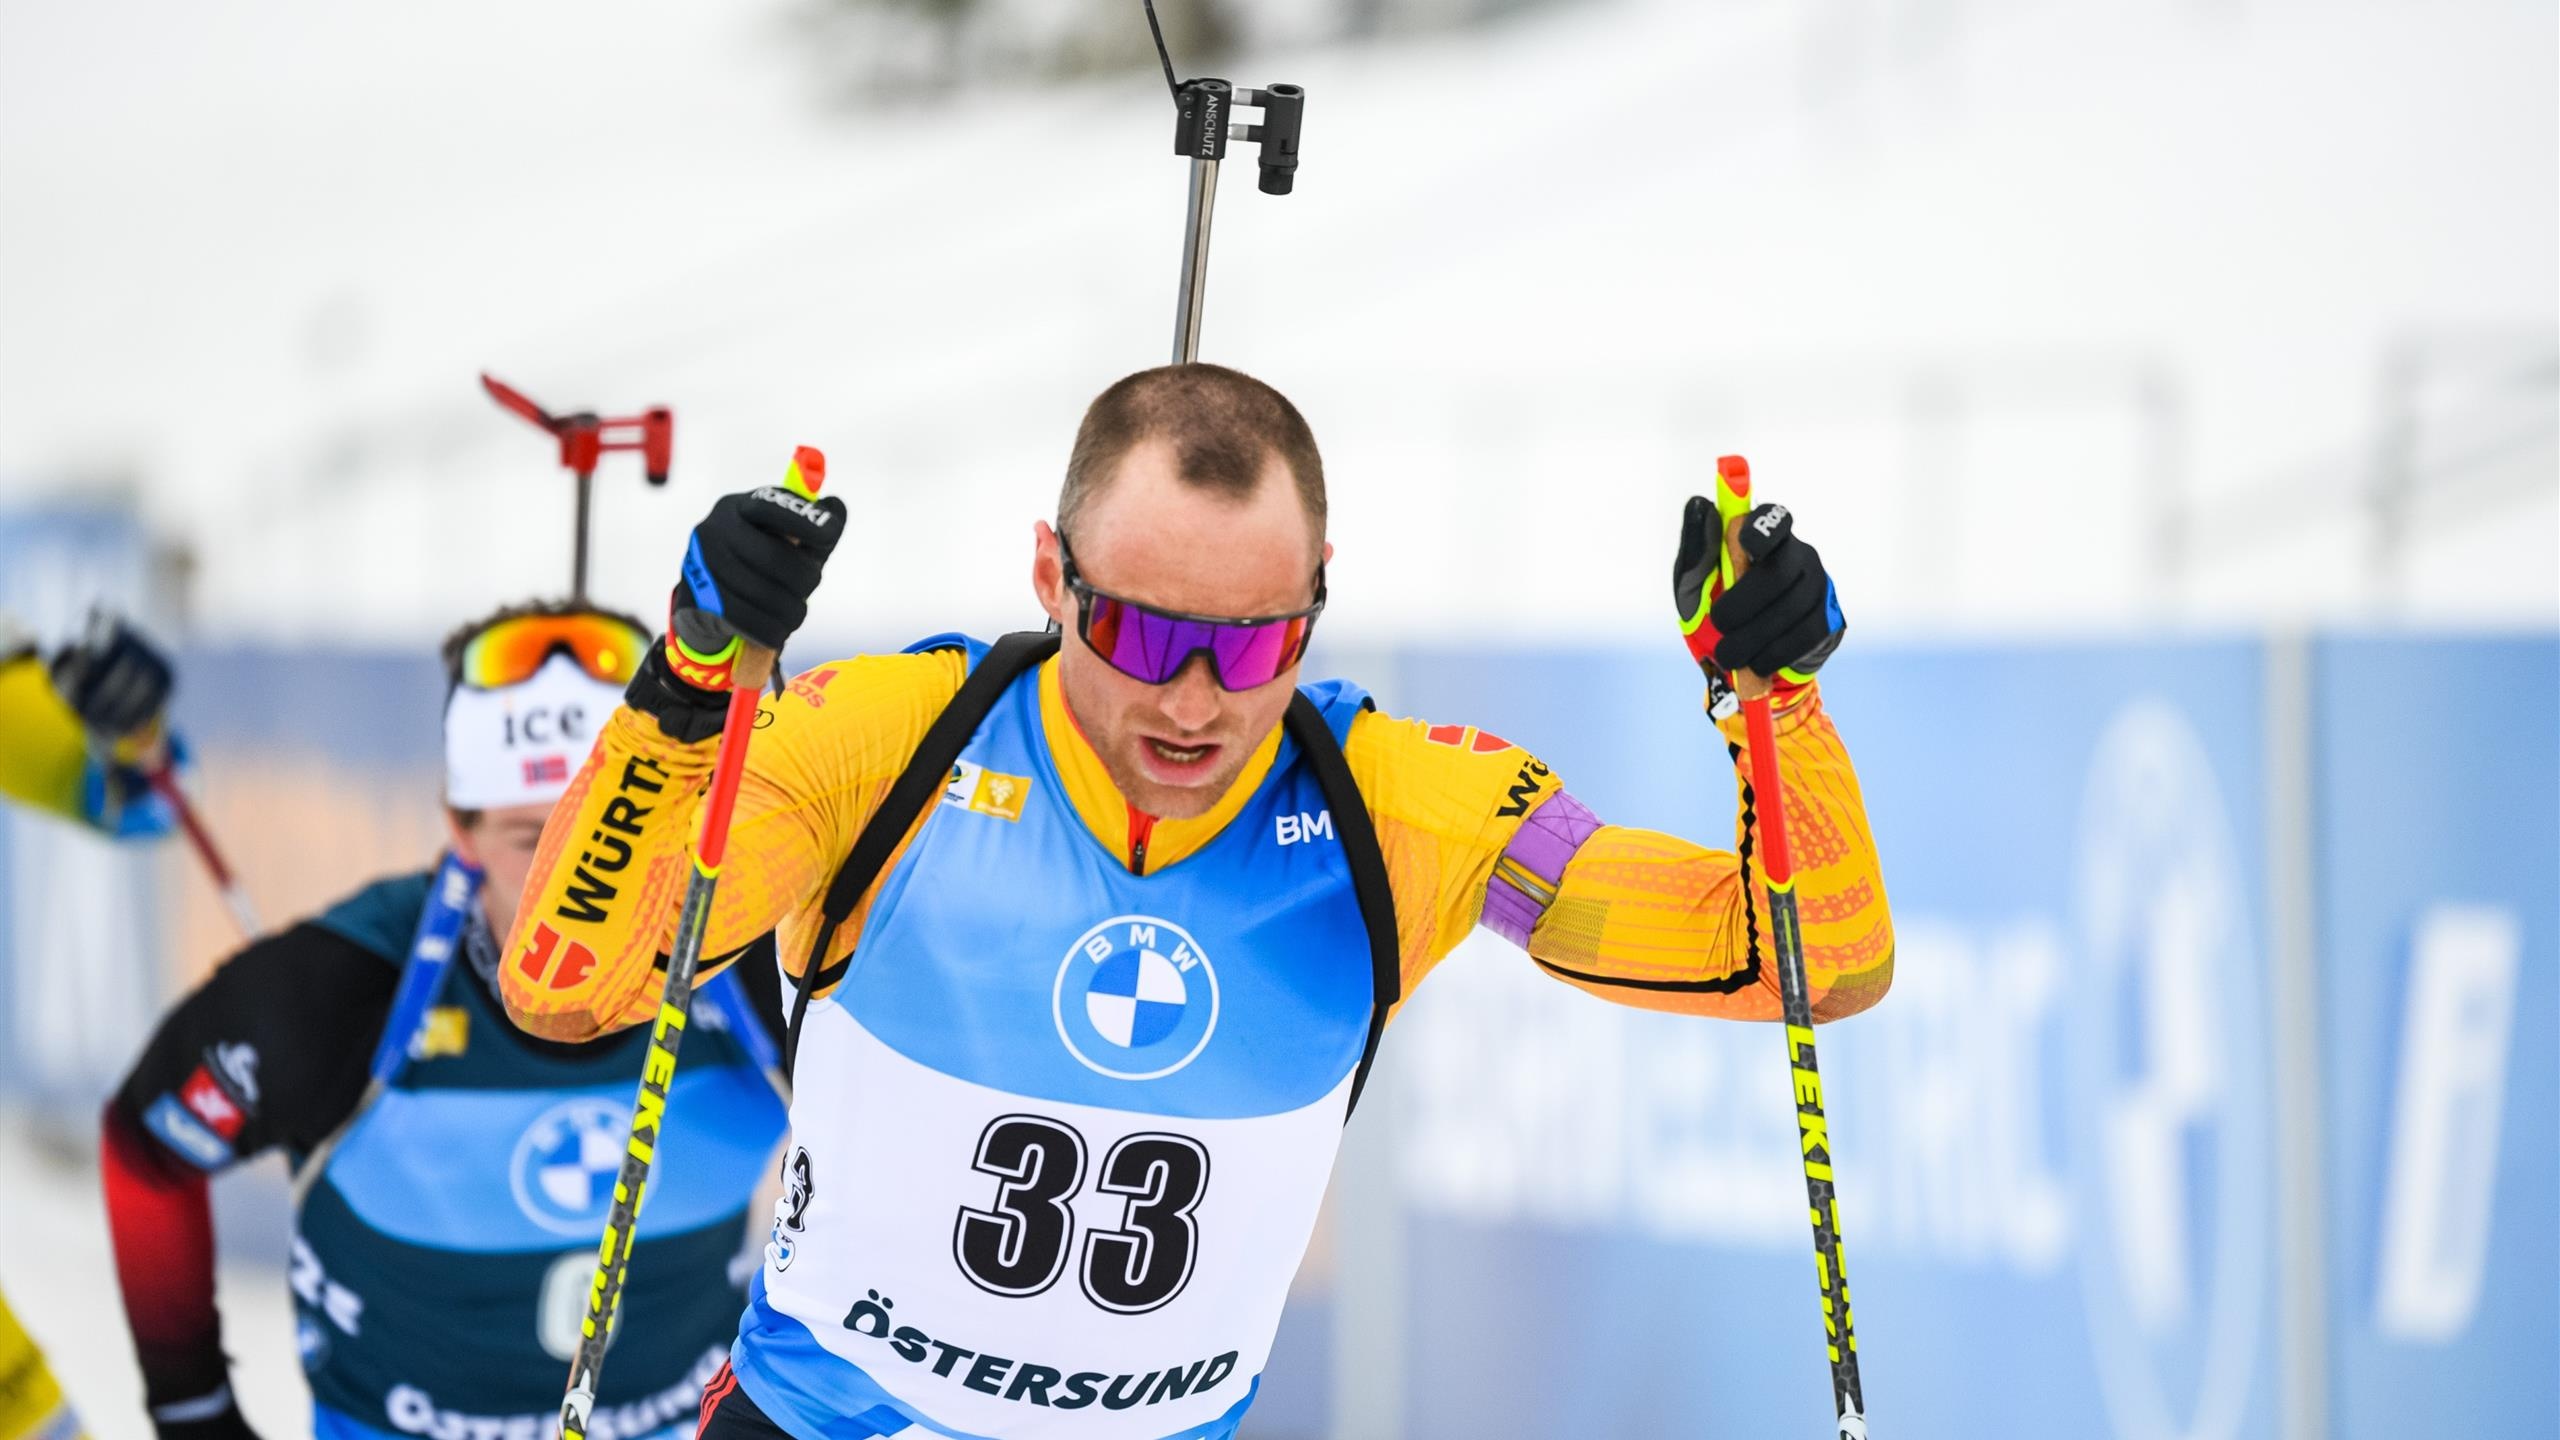 Biathlon: Simon Schempp, World Cup in Hochfilzen, 2017 mass start world champion. 2560x1440 HD Background.